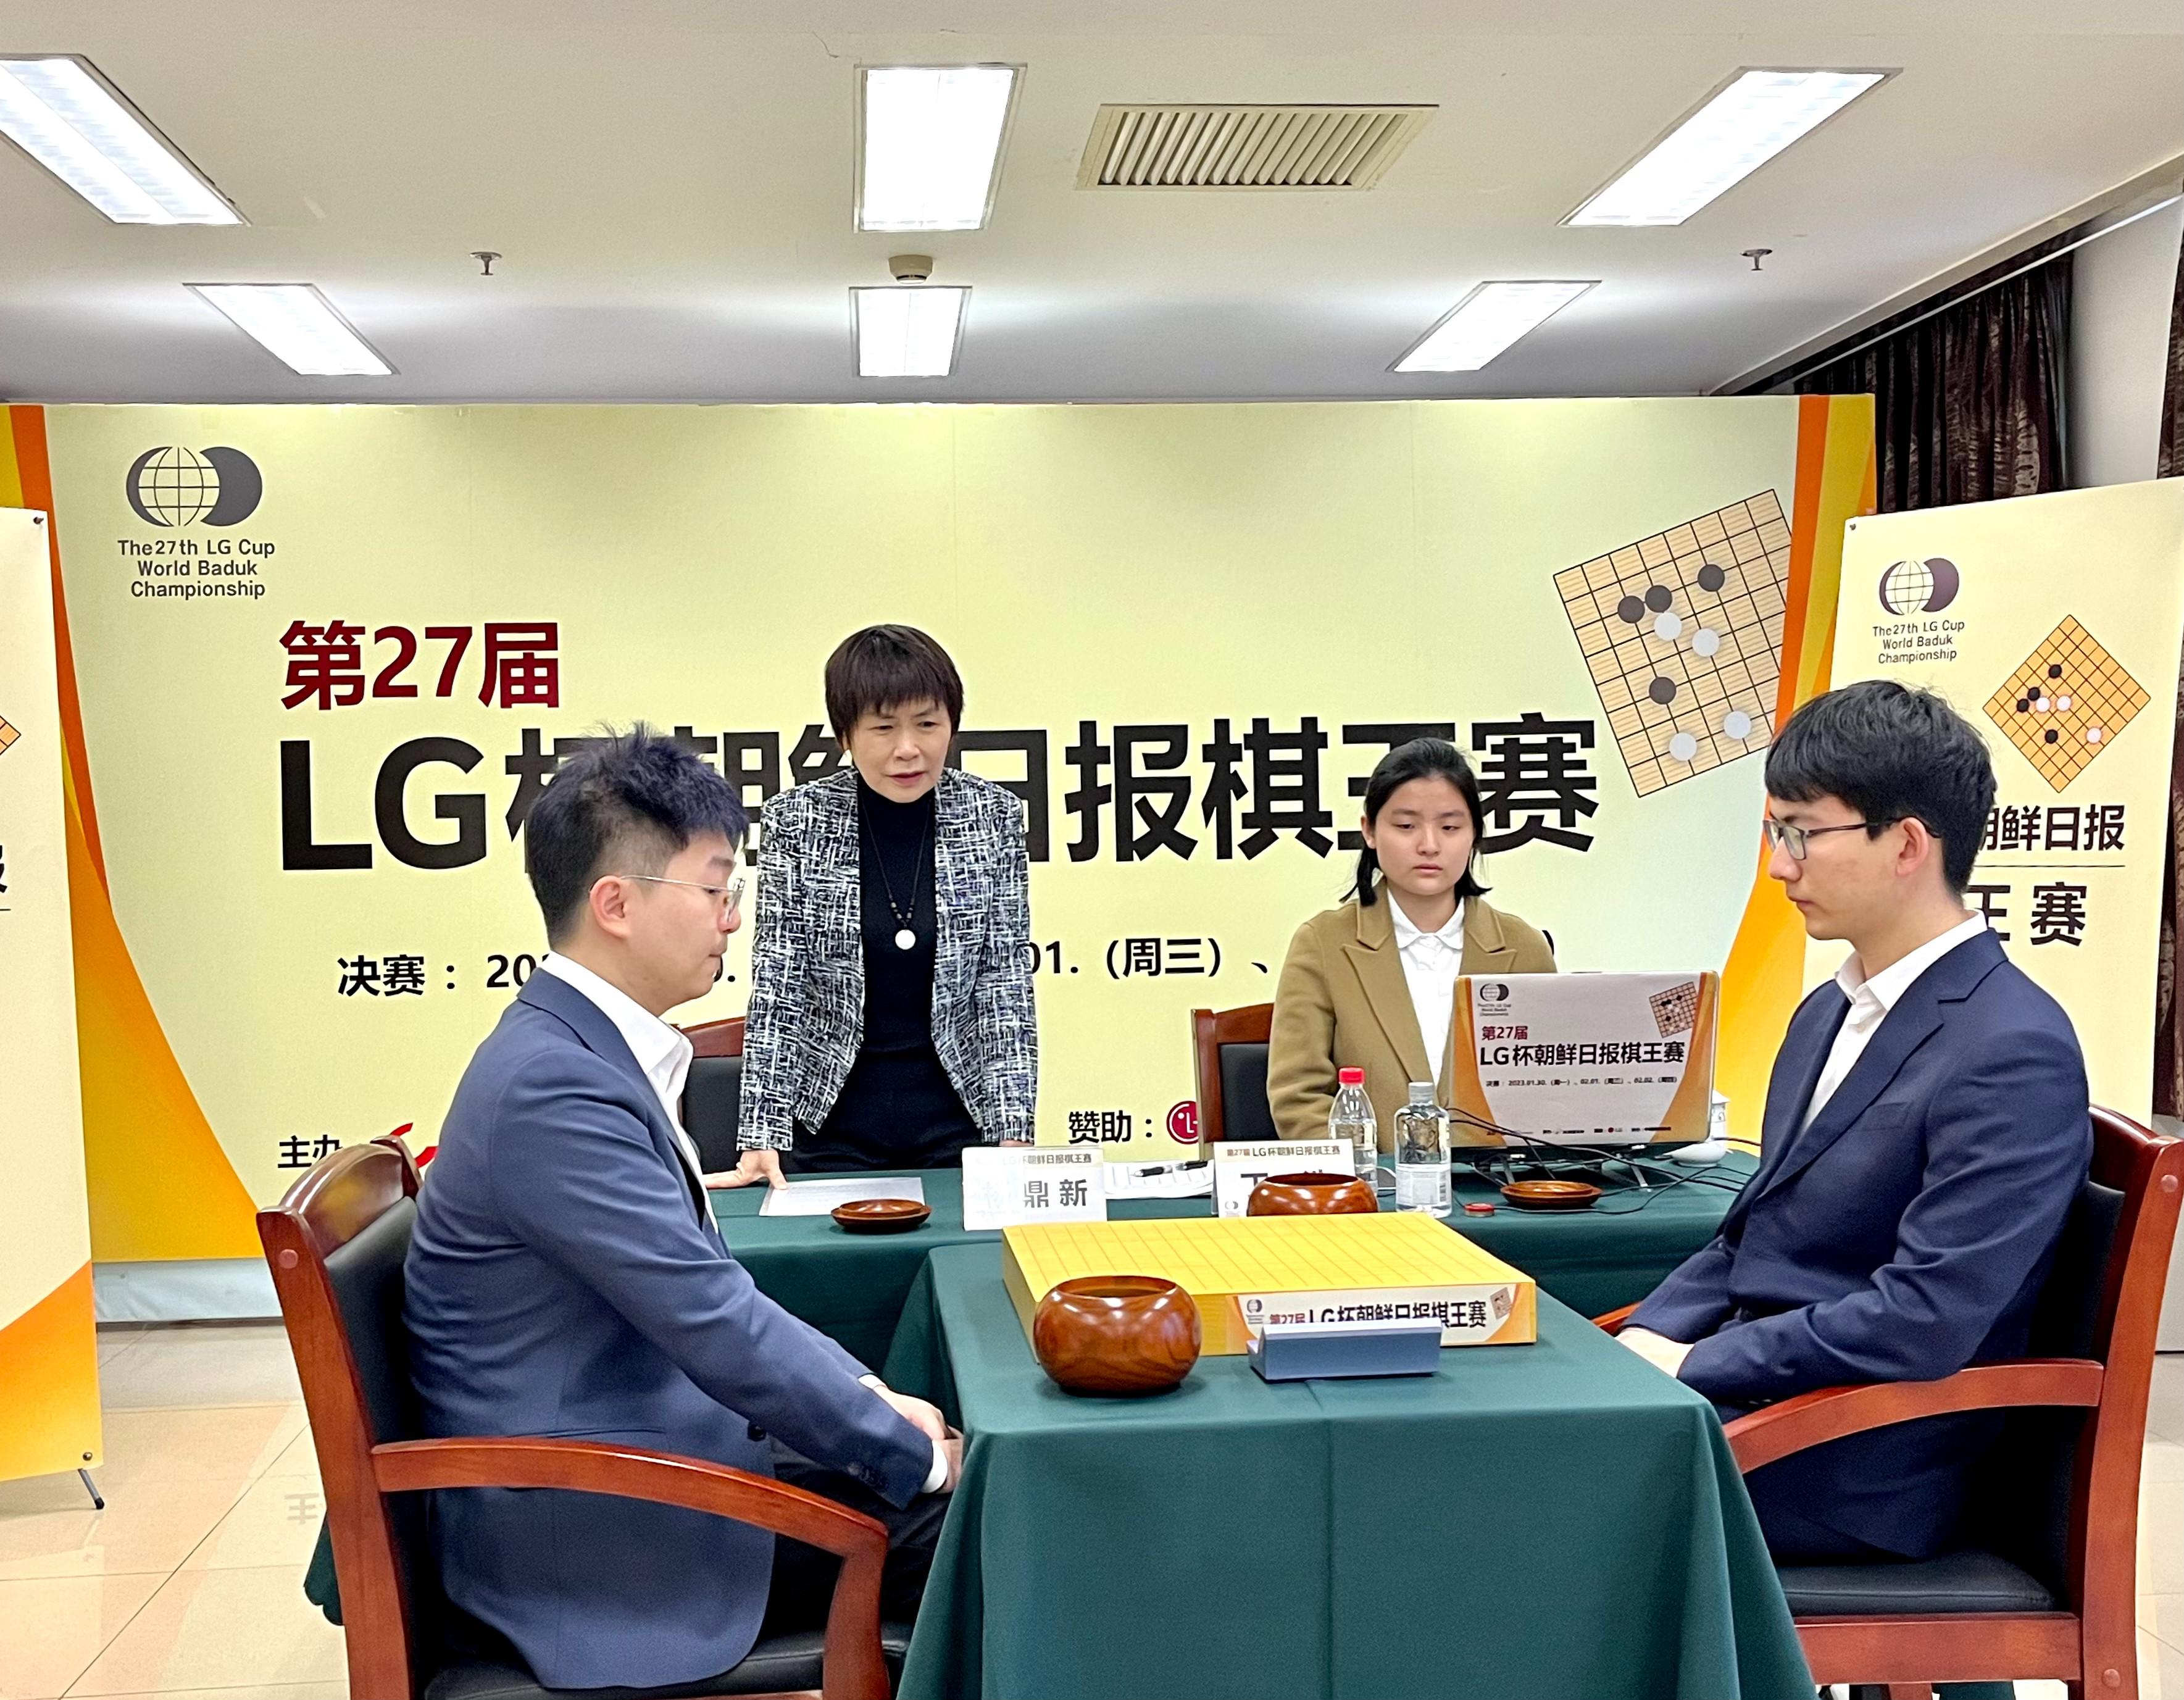 捧得LG杯 丁浩成为中国首位00后围棋世界冠军(2)